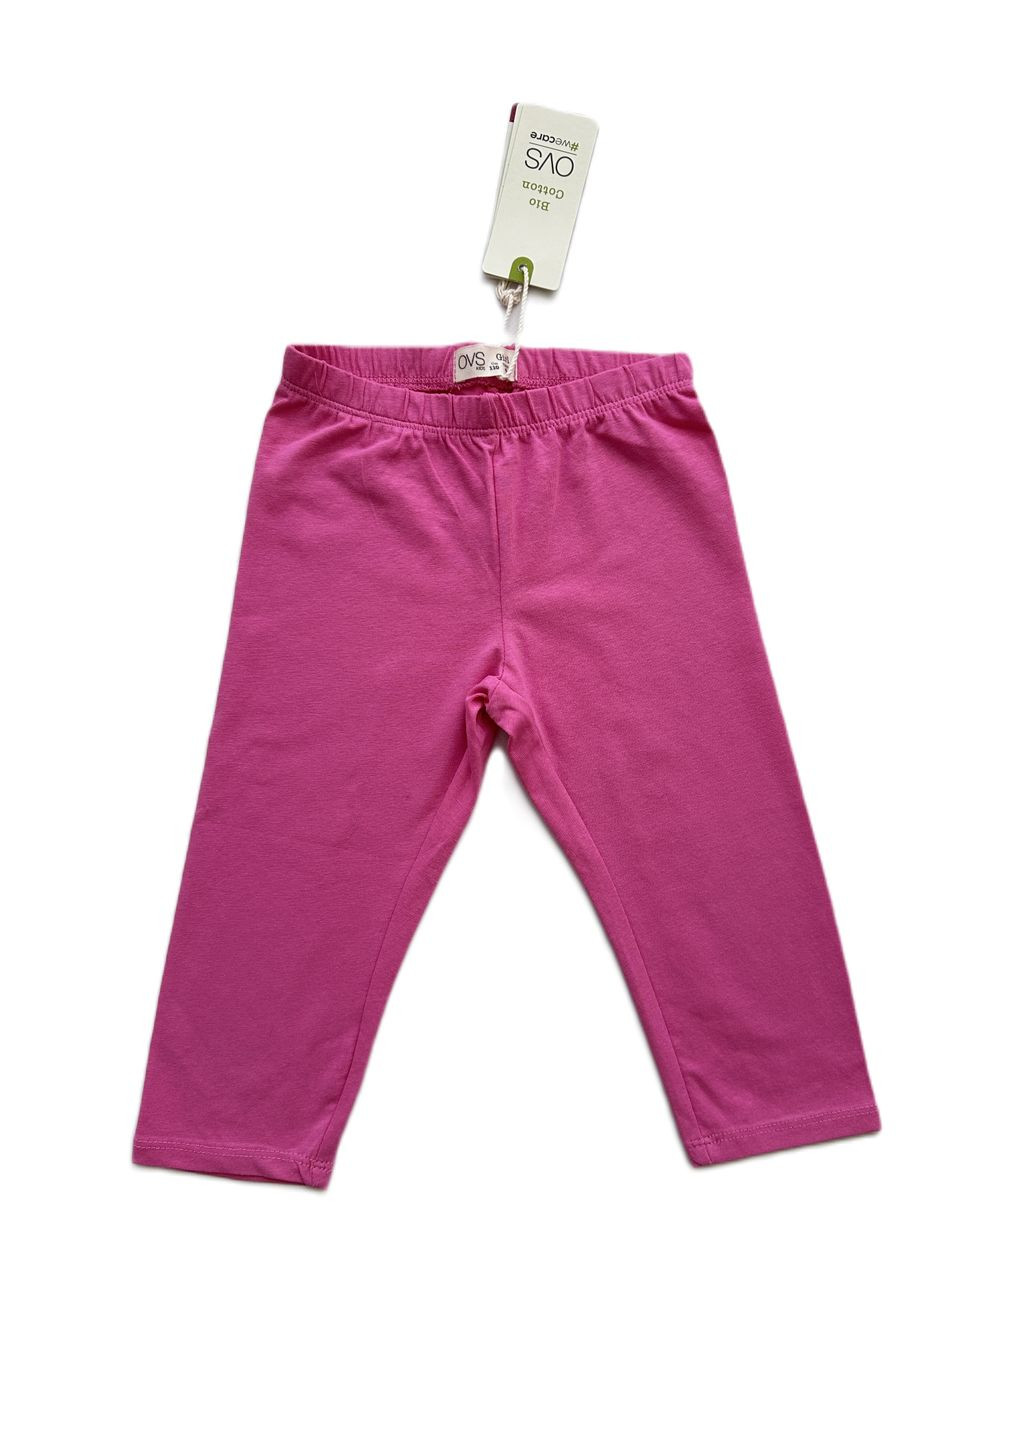 Розовый летний комплект костюм для девочки белая майка с олафом + велосипедки розовые 1000-3/2000-13 (110 см) OVS